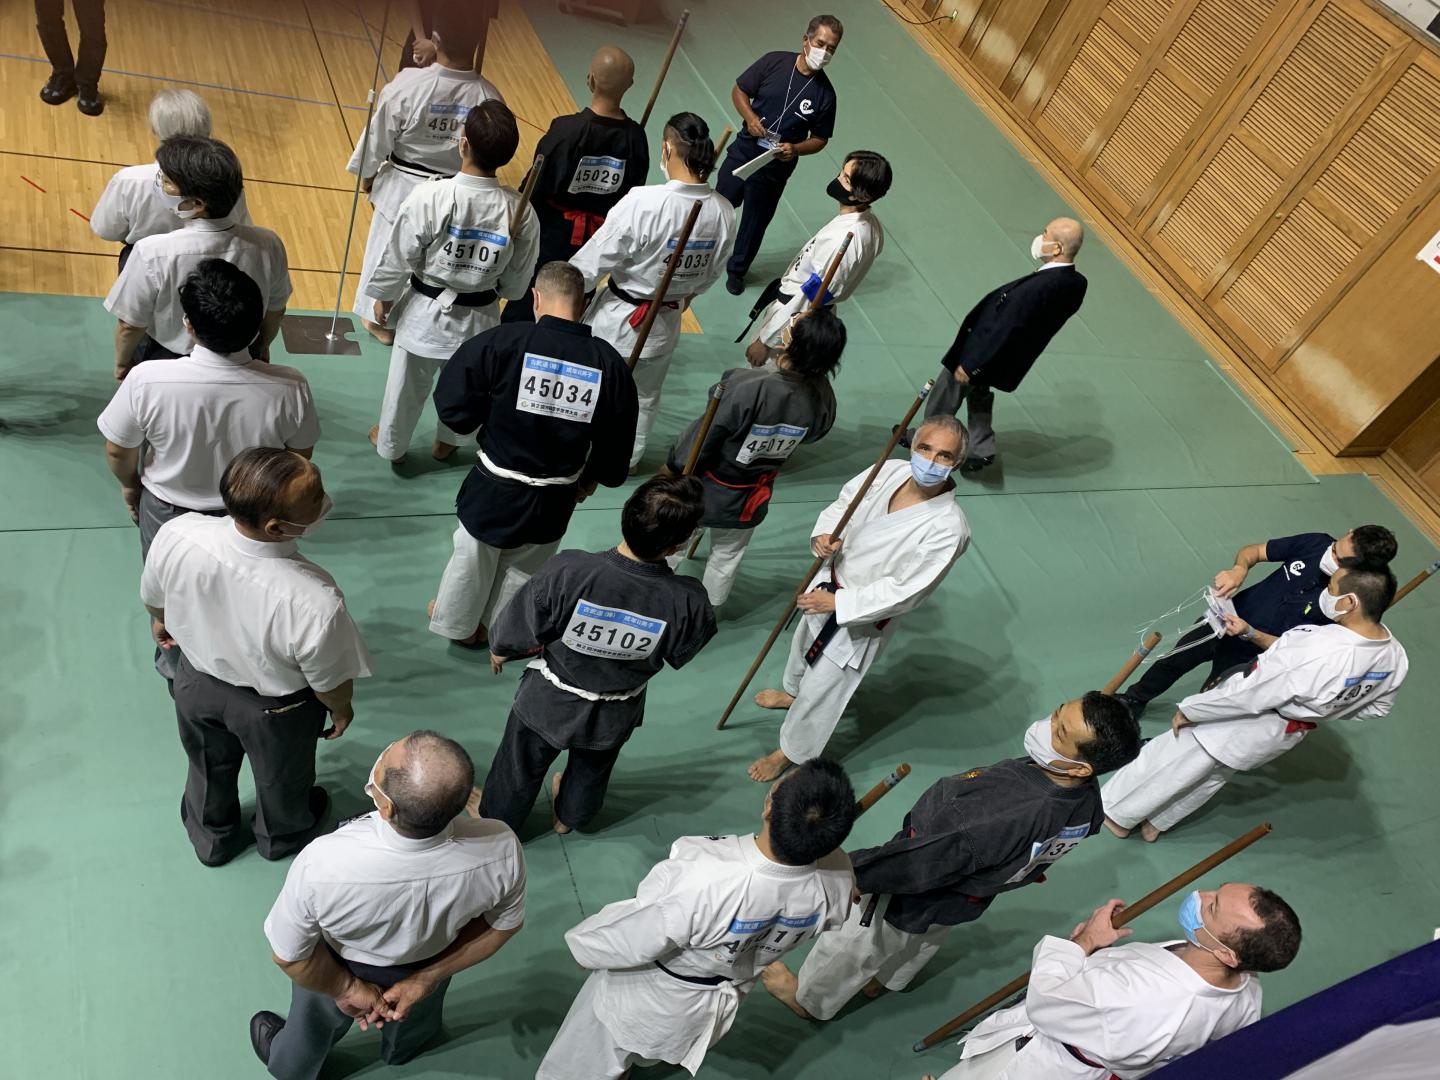 Adultes 2 bo - Stef en 8ème de finale - Okinawa karate world championships 2022